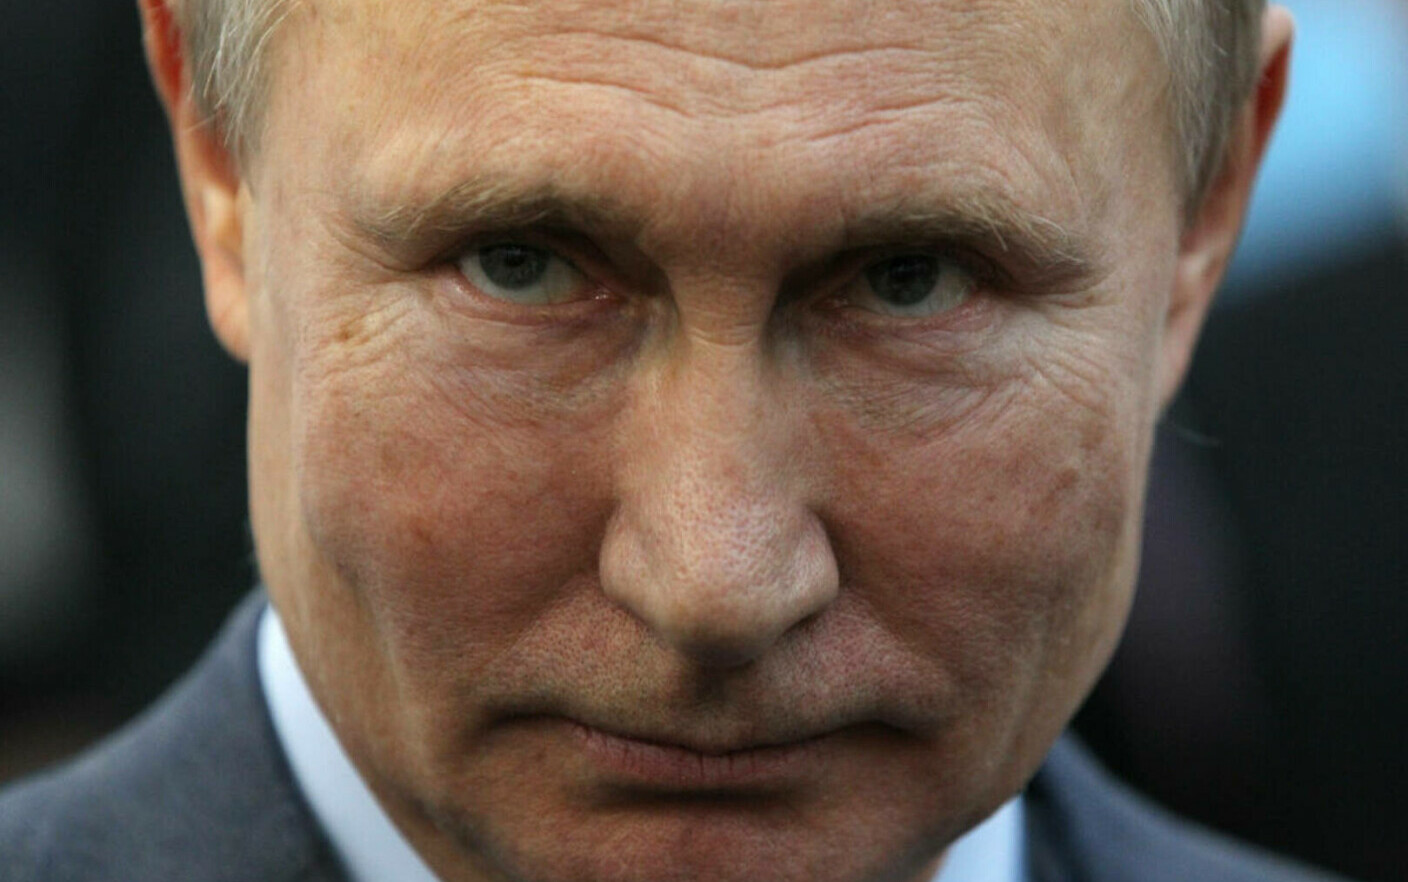 Vladimir Putin le cere vecinilor Rusiei să nu escaladeze tensiunile: ”Nu avem intenții rele”